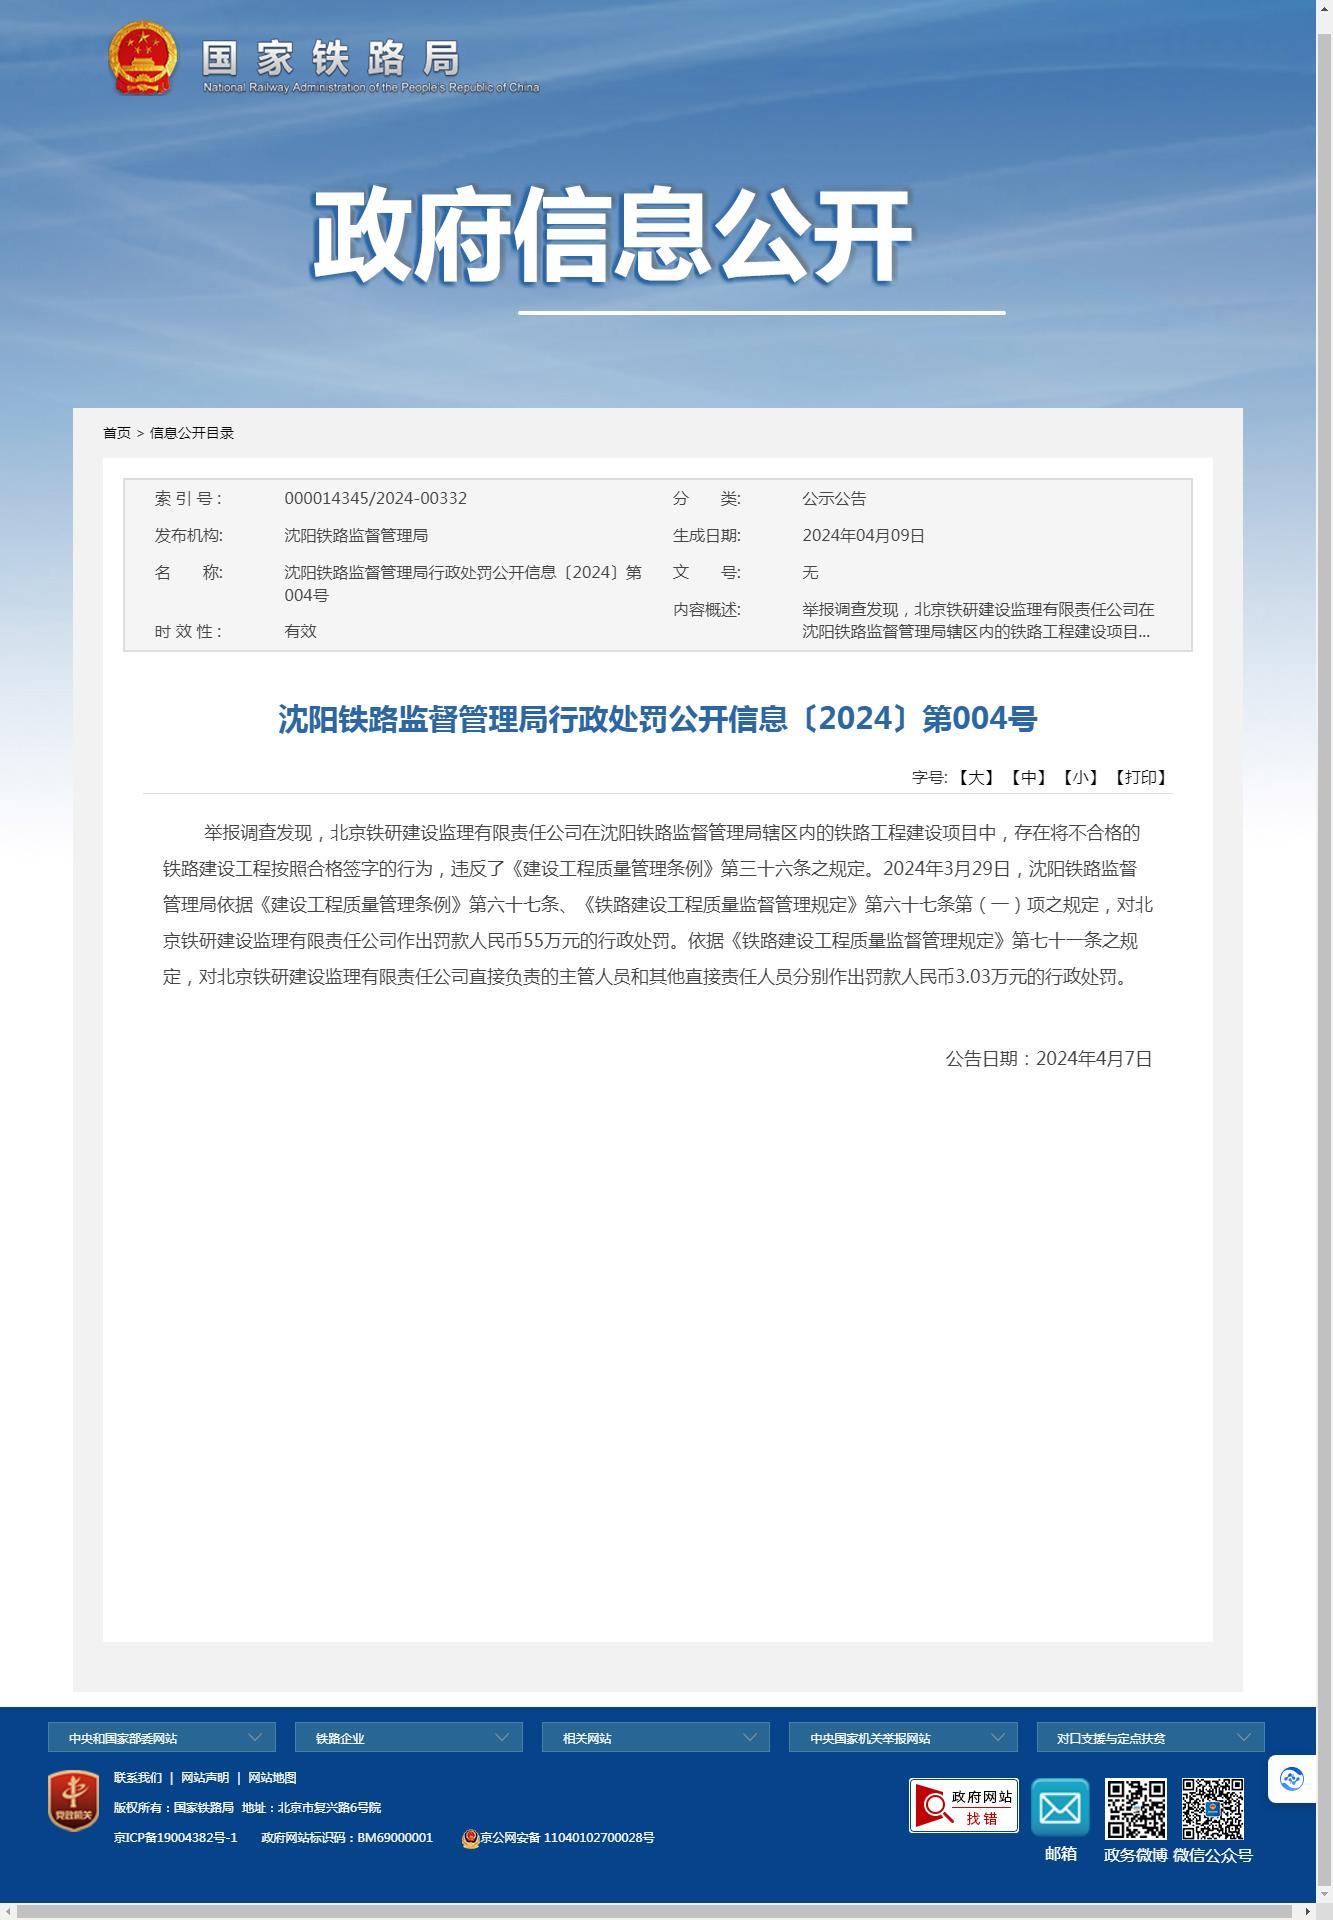 北京铁研建设监理有限责任公司因存在将不合格的铁路建设工程按照合格签字被罚55万元  相关负责人员一同被罚